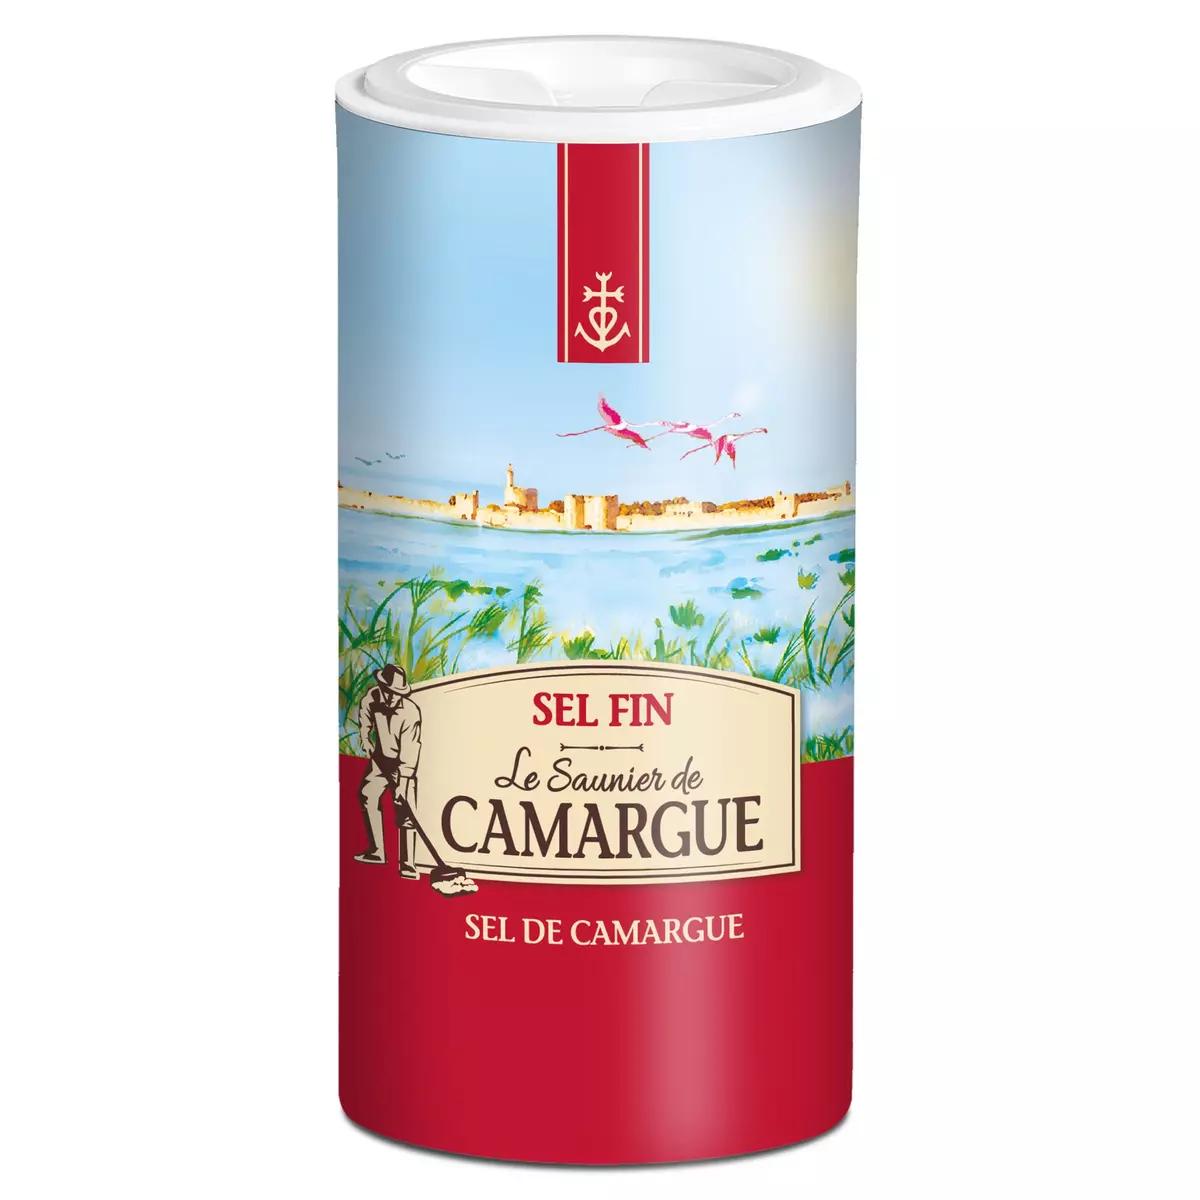 LE SAUNIER DE CAMARGUE Sel fin de Carmargue 250g